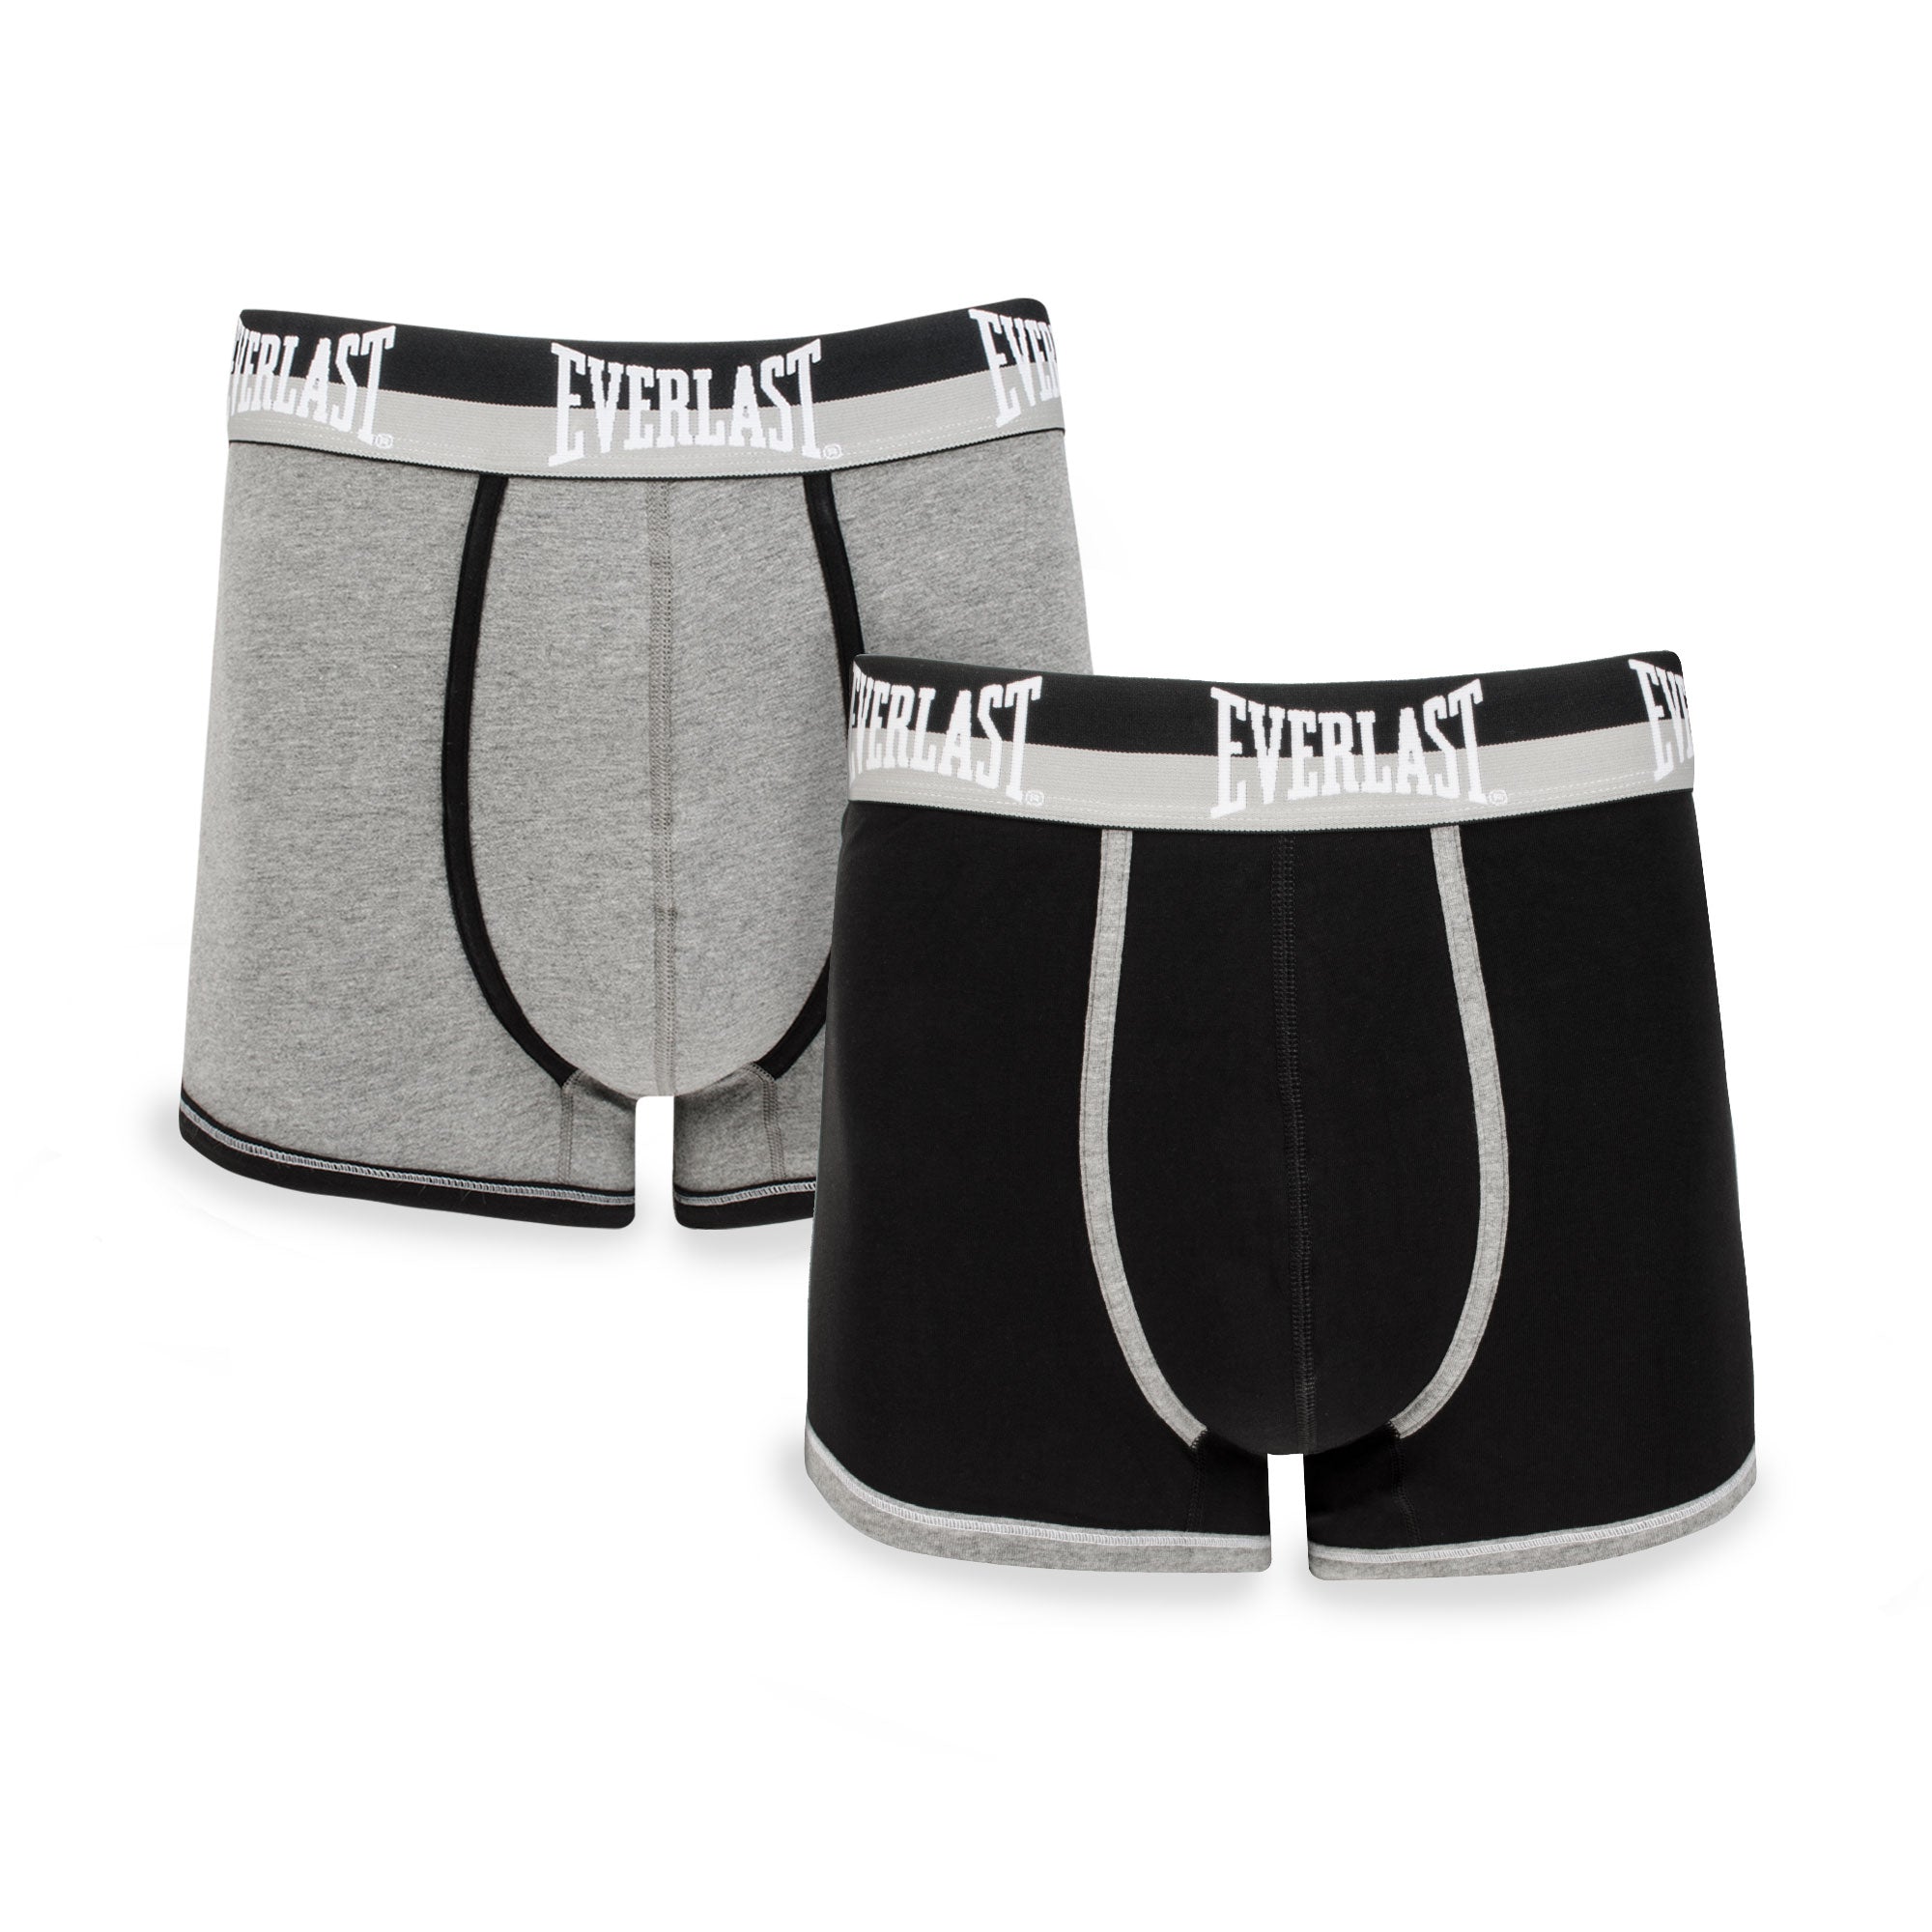 2 Pieces) Cotton Stretch Playboy Men's Trunks Underwear - B122522-2S